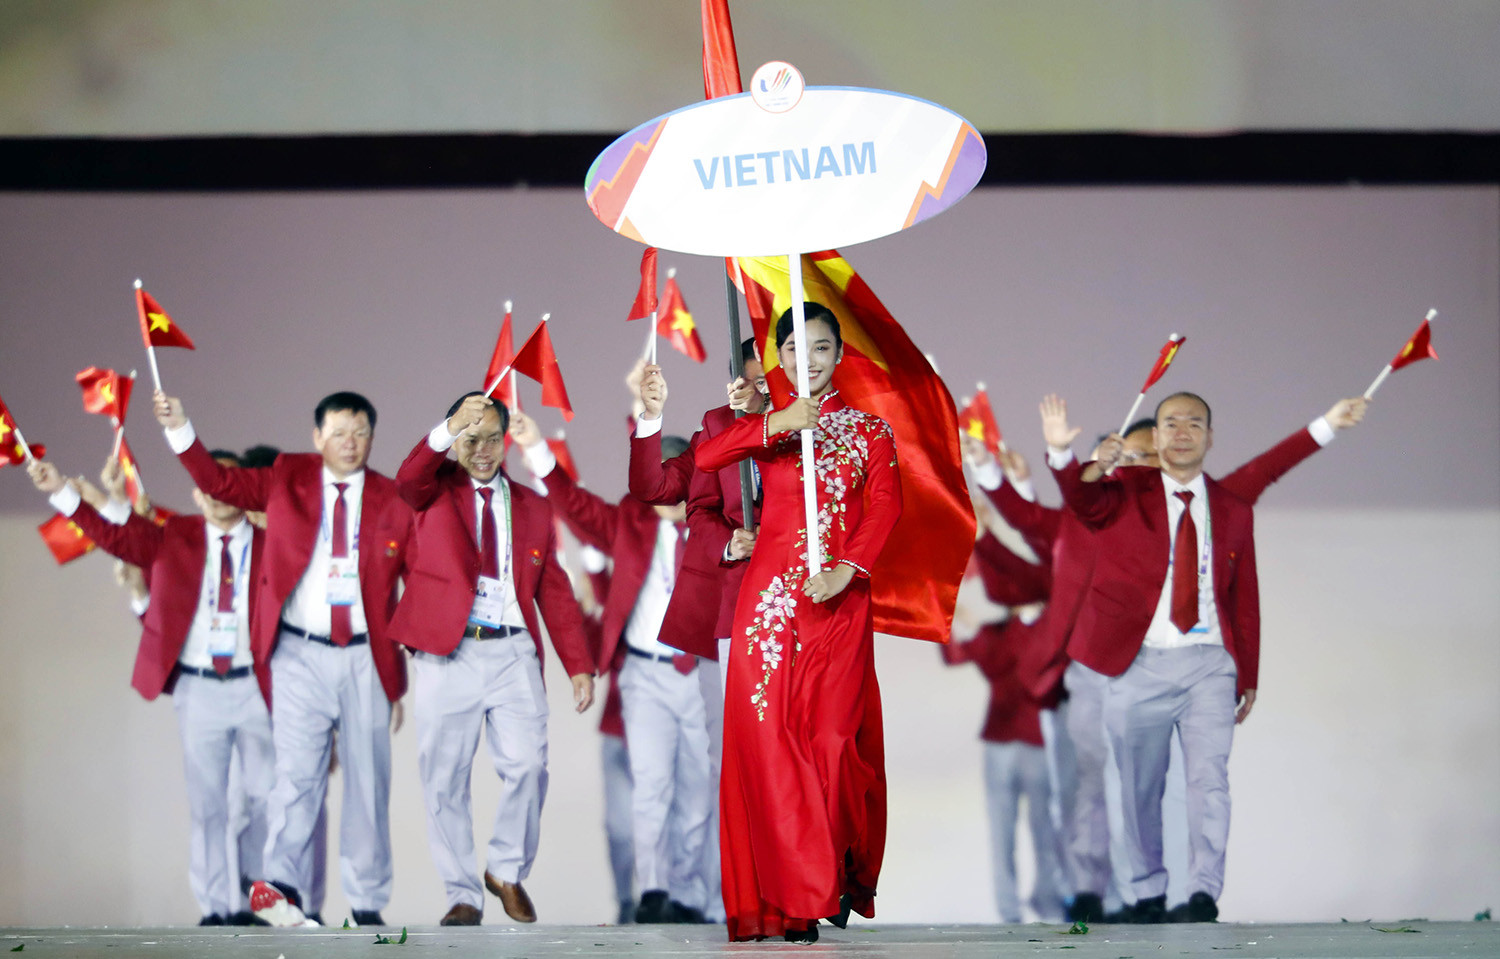 Năm VĐV điền kinh Việt Nam lần thứ 2 dương tính doping